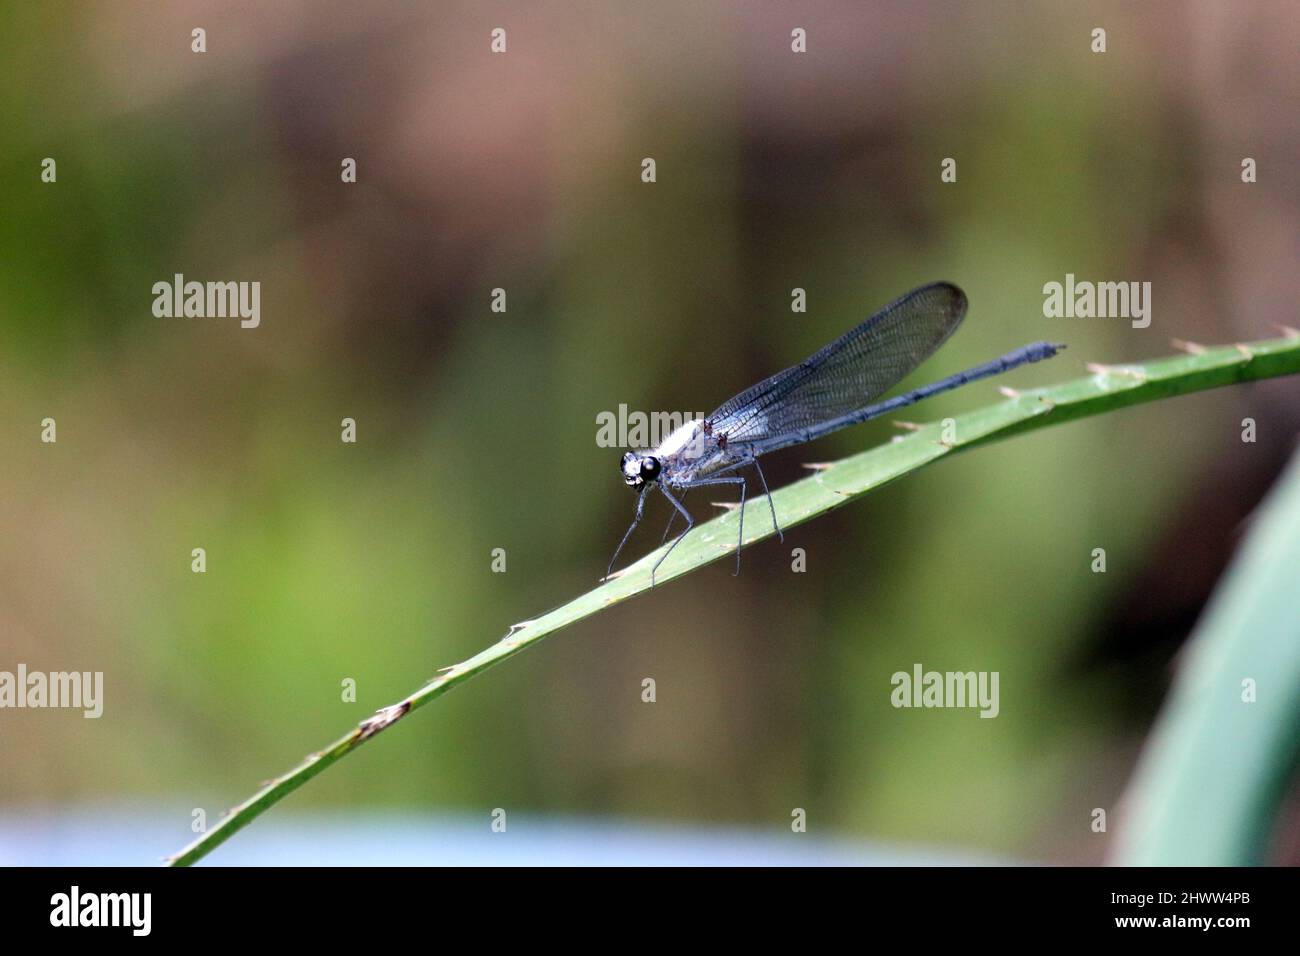 Primo piano di una libellula bianca dopo l'atterraggio. Le sue ali sono blu trasparente. L'atterraggio era su una boscaglia accanto ad un fiume. Foto Stock